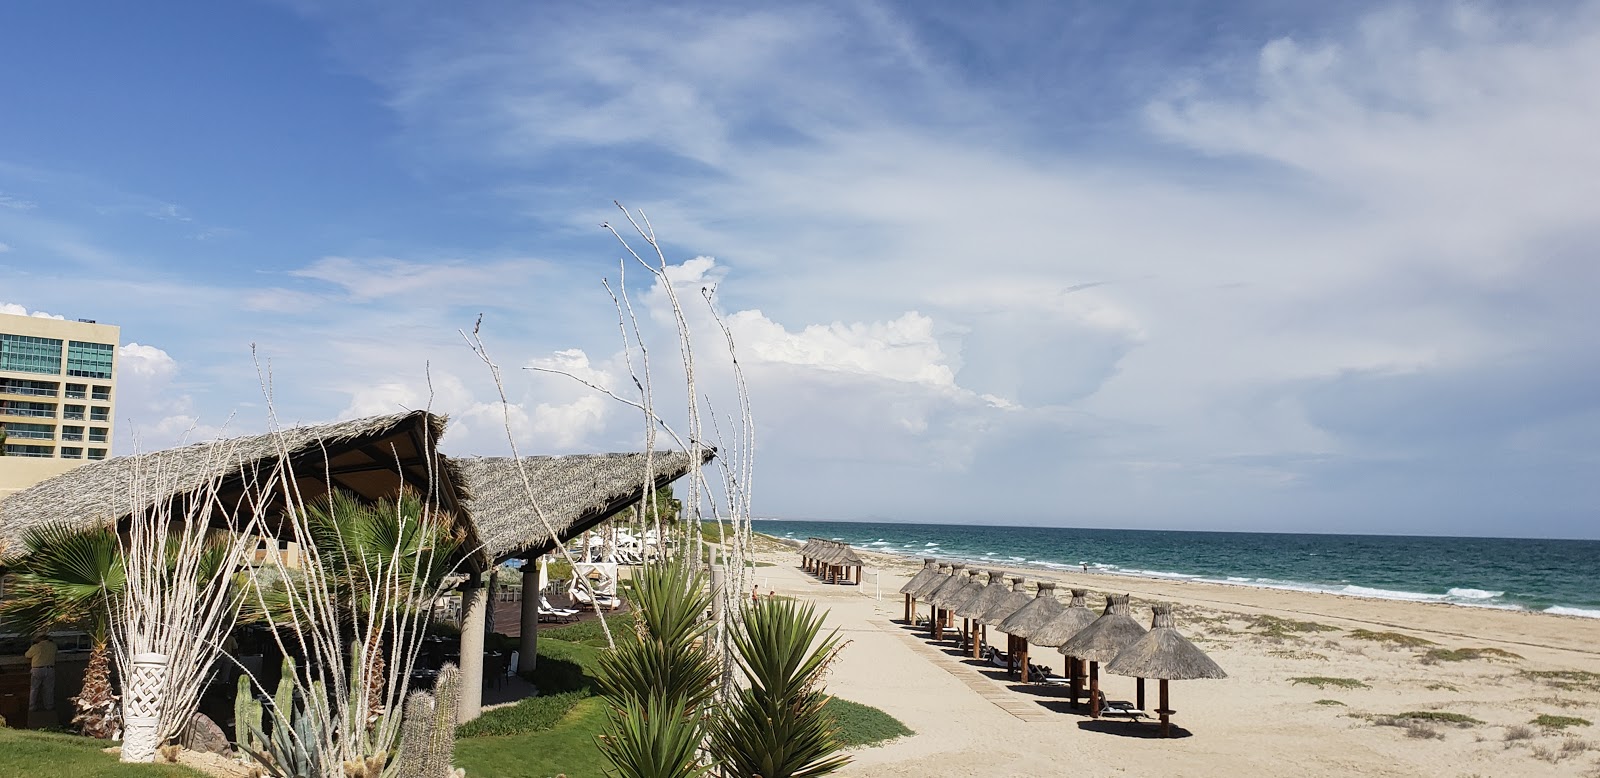 Fotografie cu Playa Mayan cu o suprafață de apa pură turcoaz